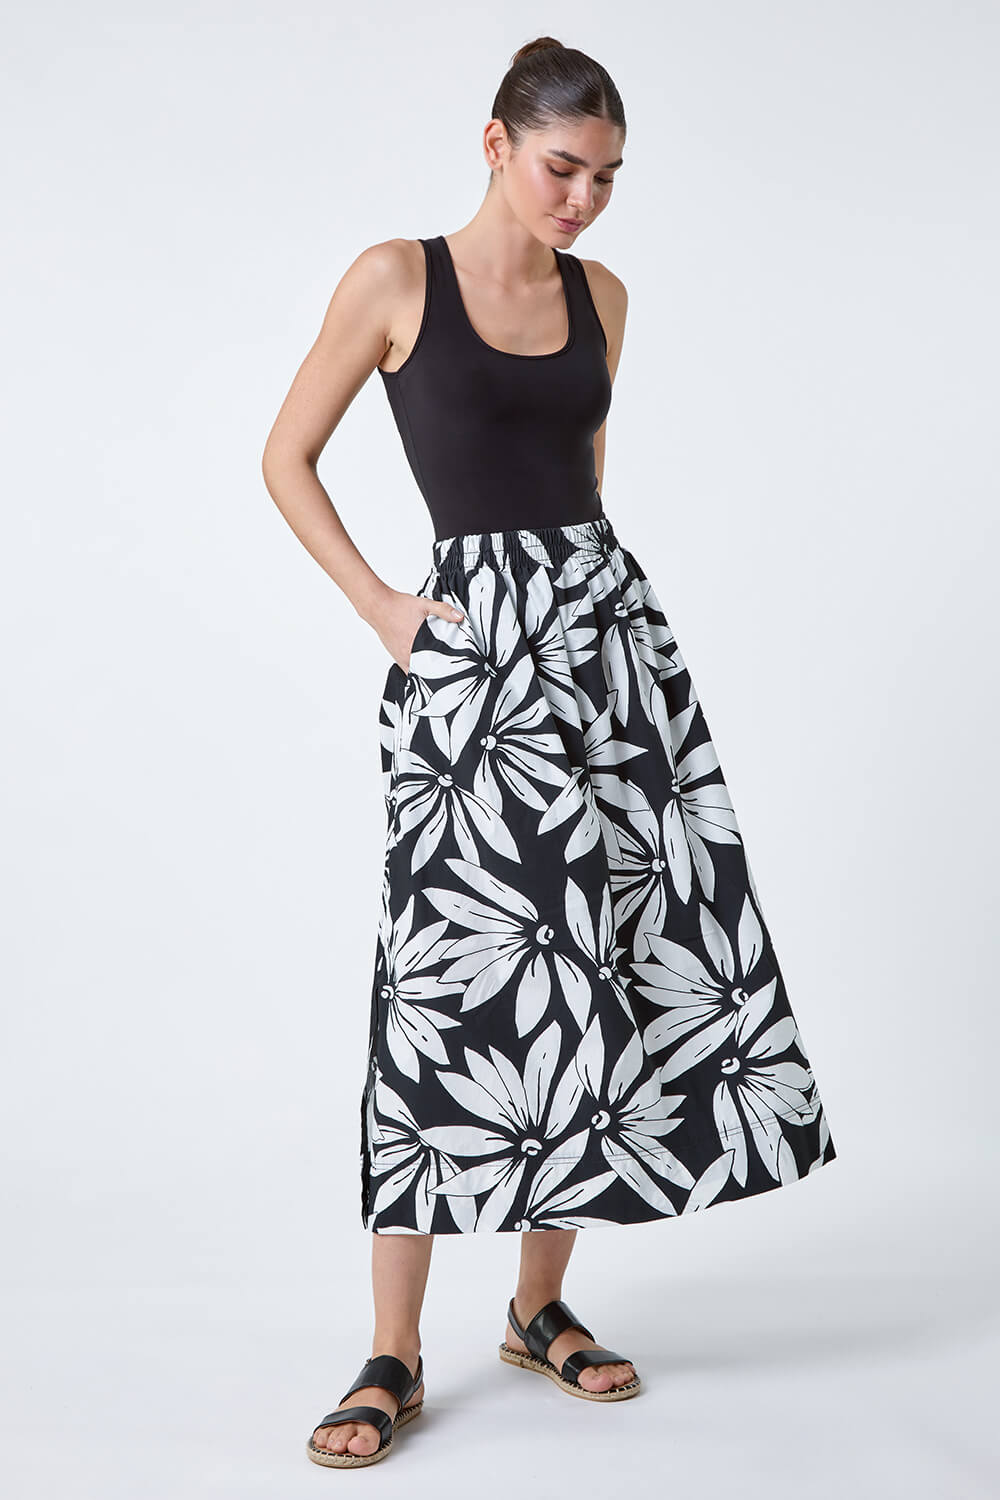 Black Floral Cotton Poplin Pocket Skirt, Image 2 of 5